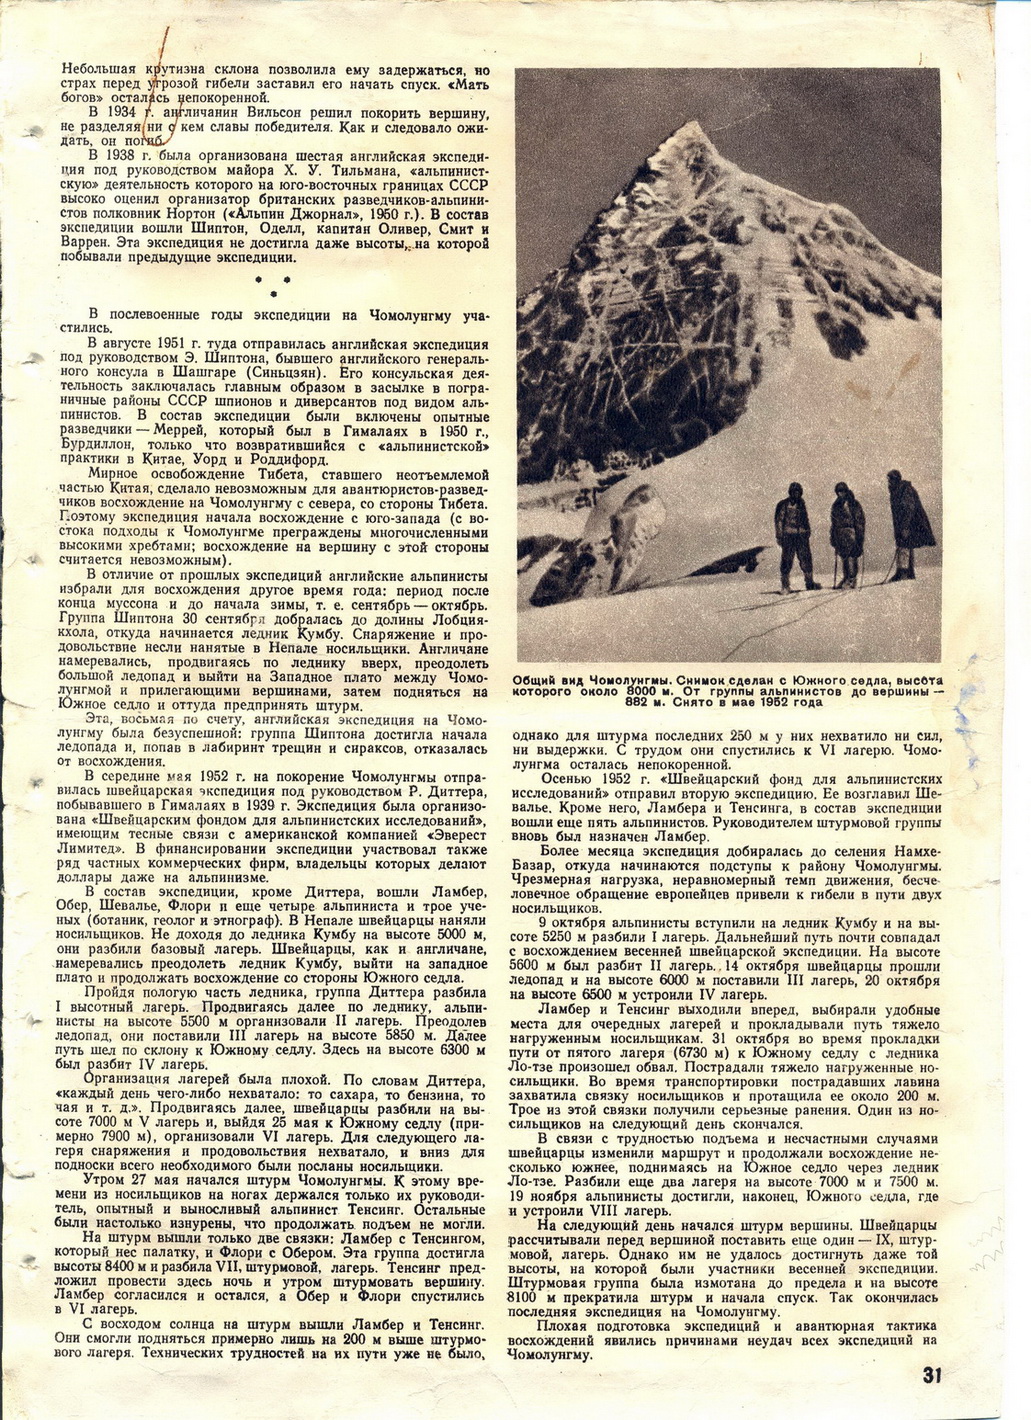 Рассказ о альпинистов. Британская Экспедиция на Эверест 1922. Эверест лагеря по высотам. Документ состав экспедиции. Экспедиция входит в состав